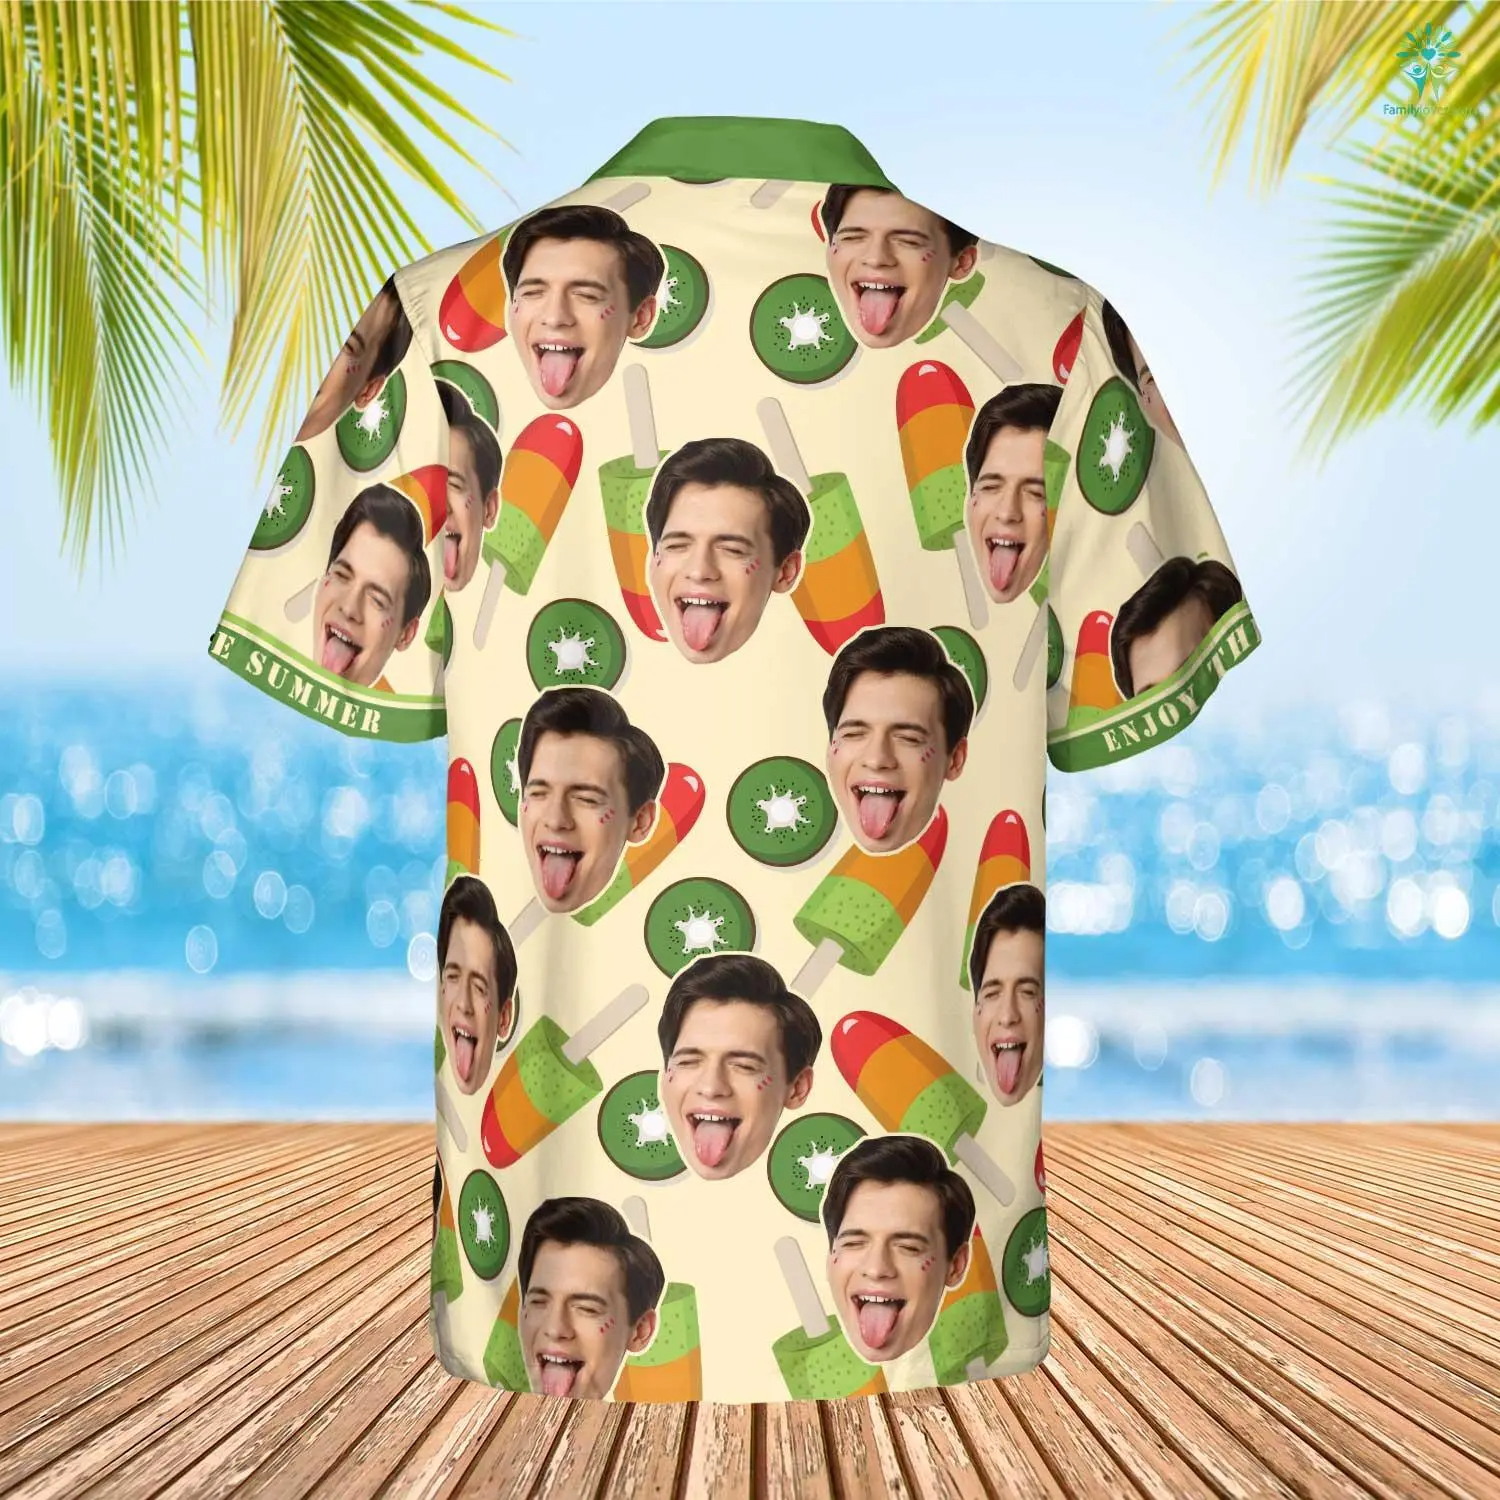 Kiwi Icream Hawaiian Funny Custom Face Image Summer Shirt Beach Hawaiian Shirt/ Gift for Him Her/ Enjoy the Summer